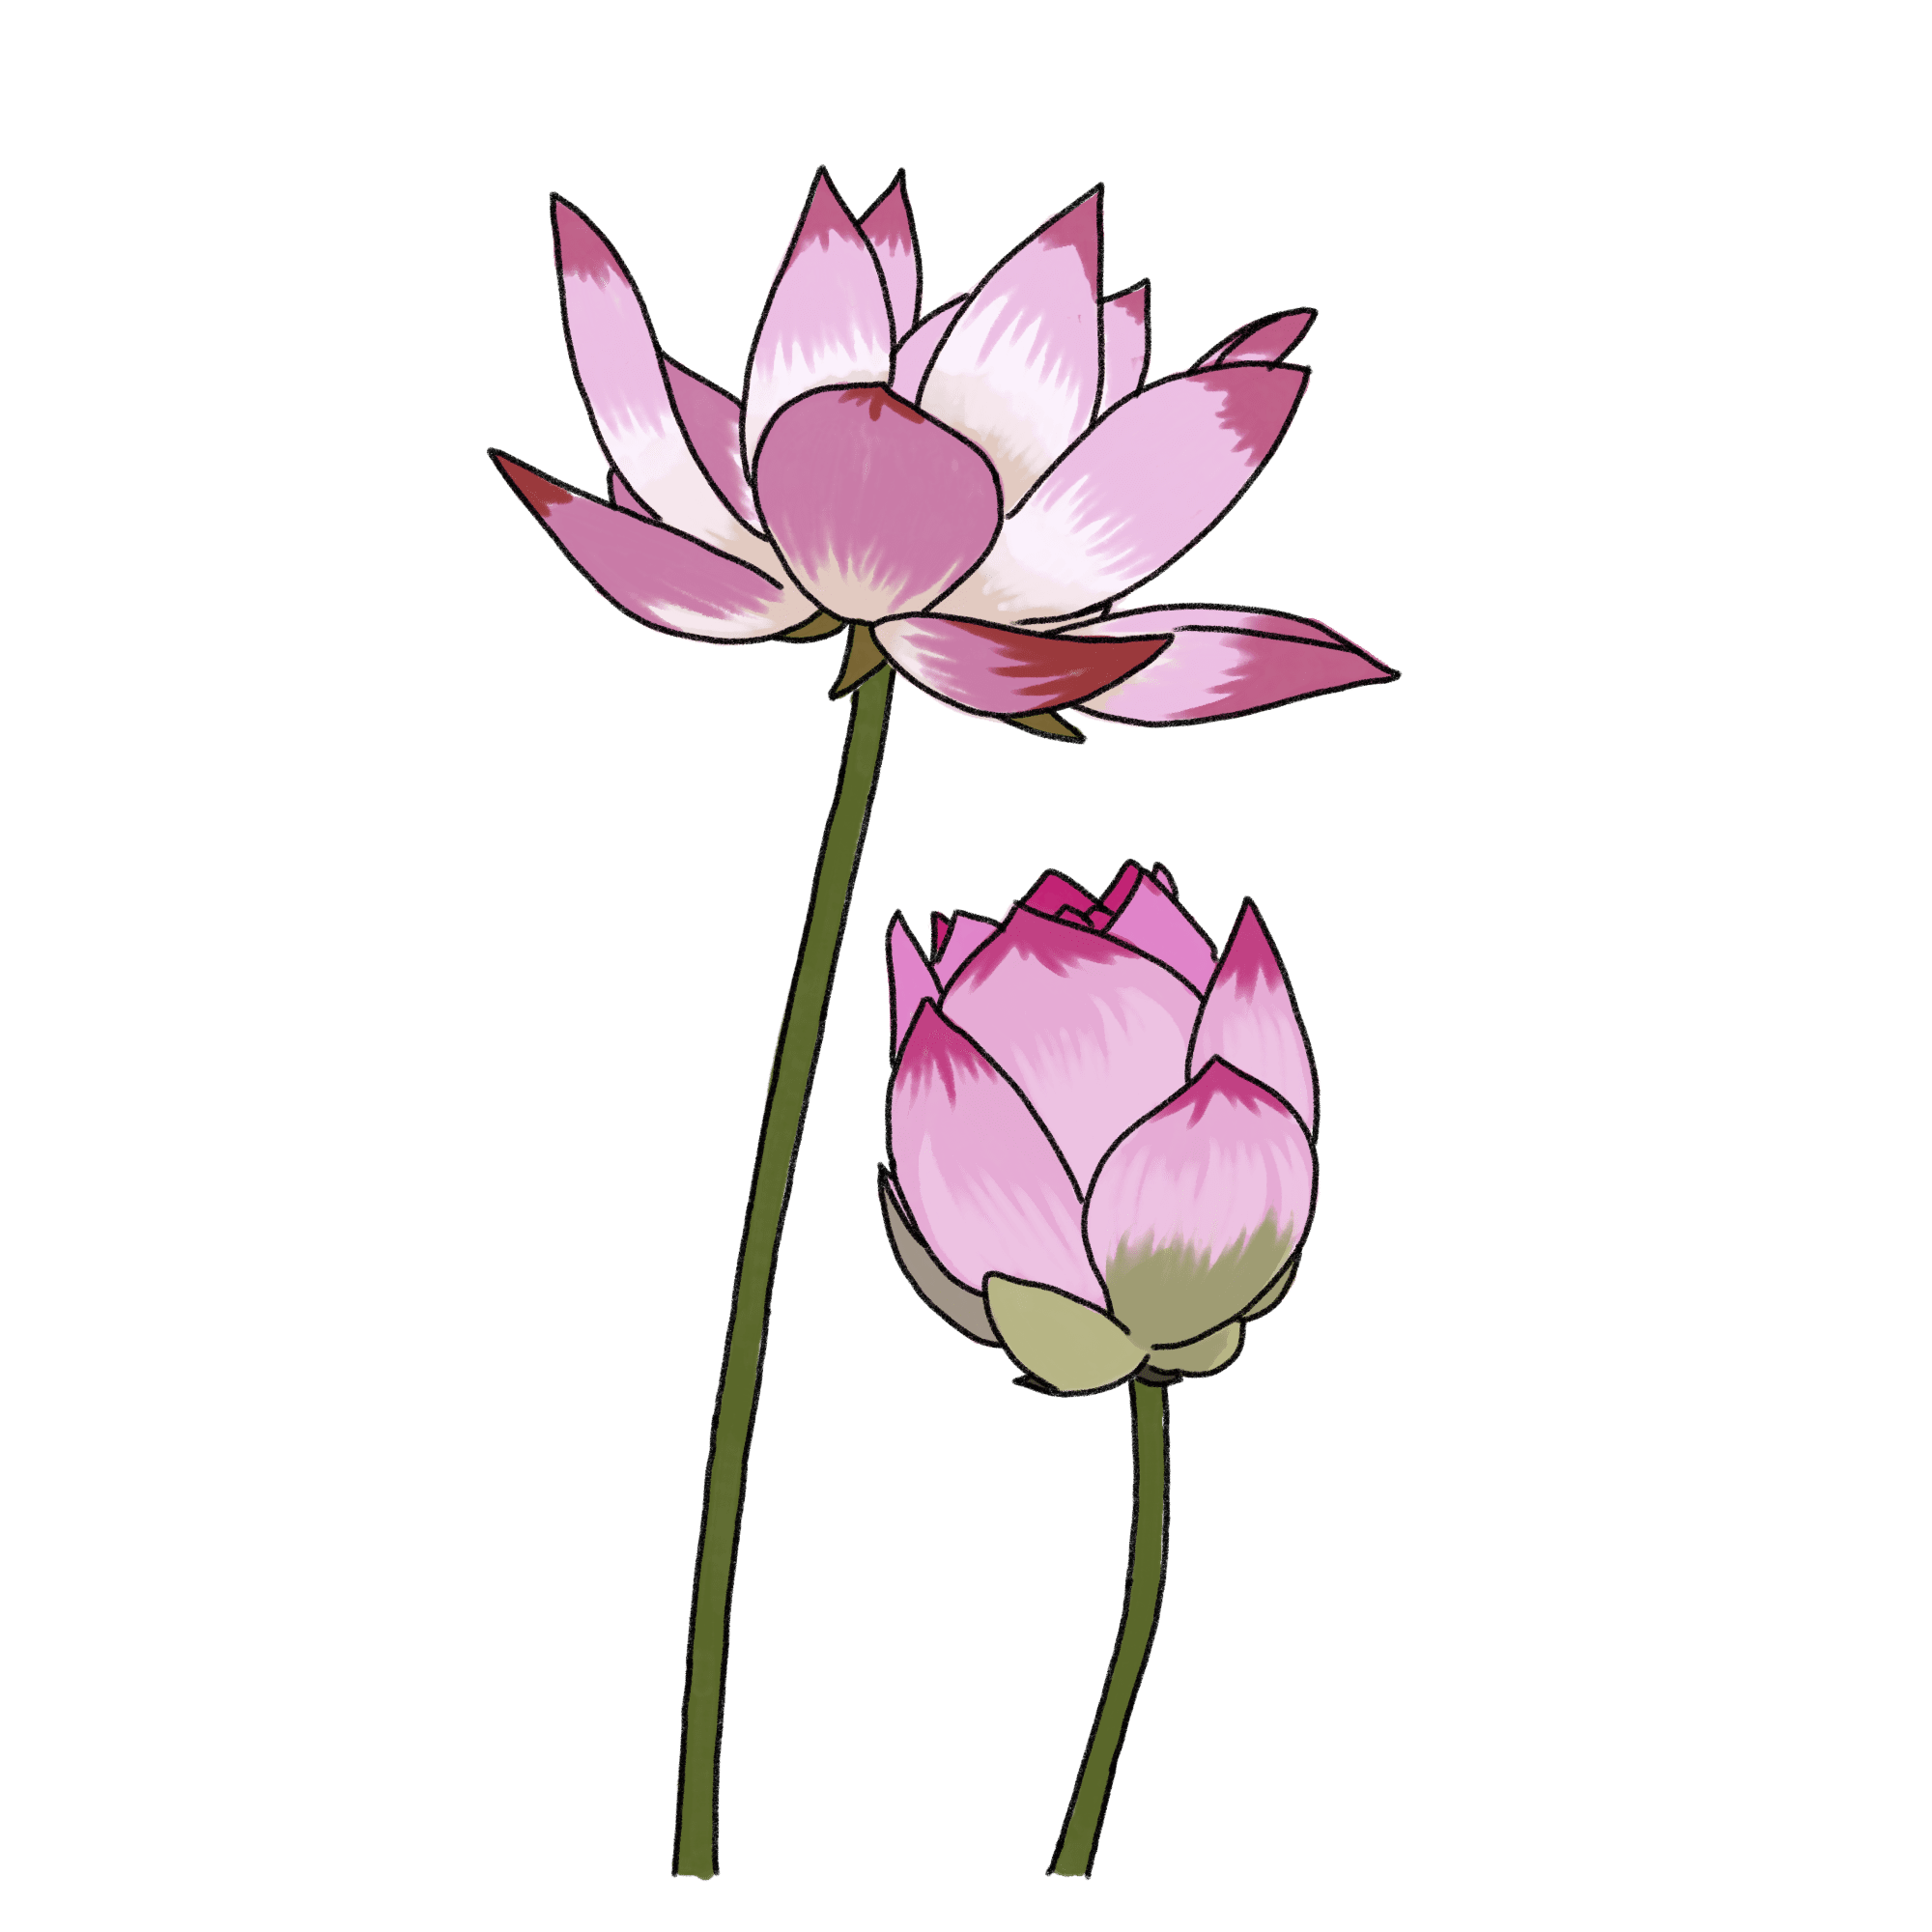 ハスの花のイラスト フリー素材 Greenstock40